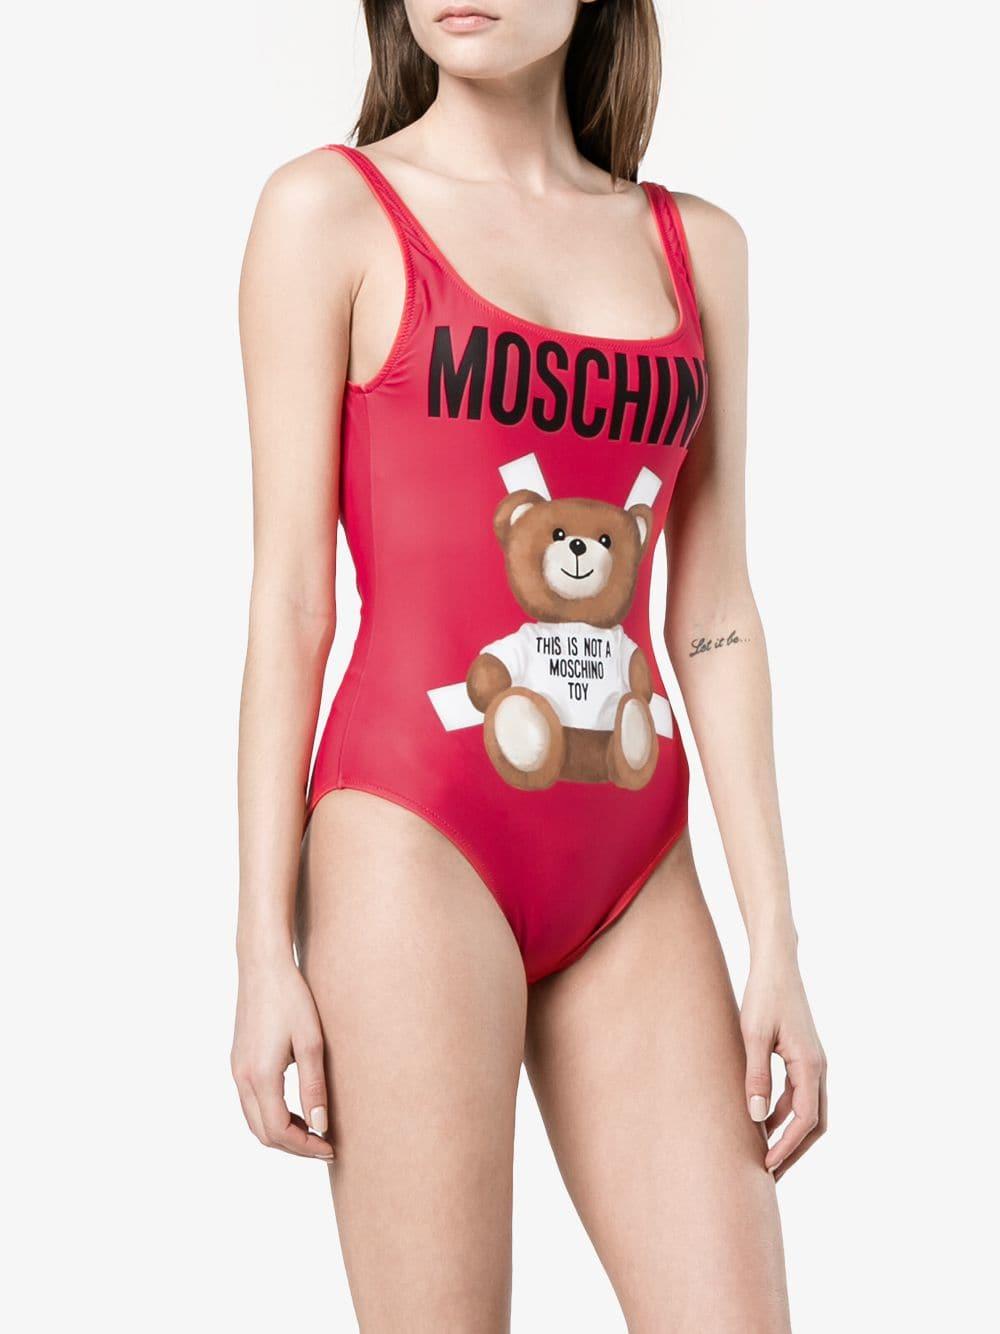 moschino swimming suit